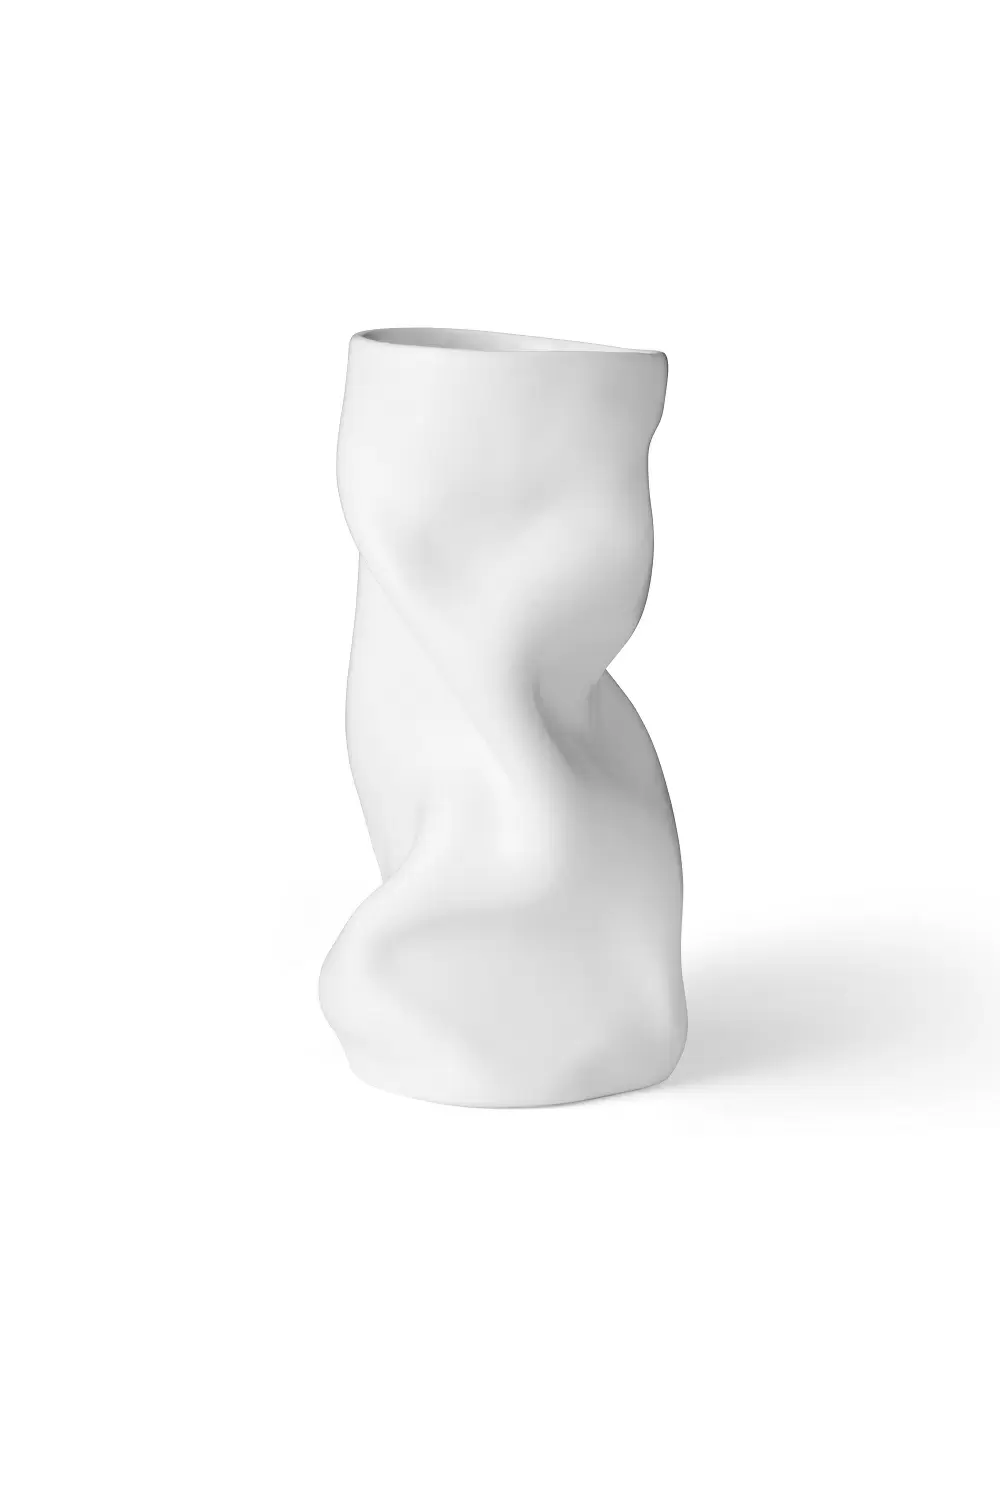 Ваза Collapse Vase H30 White